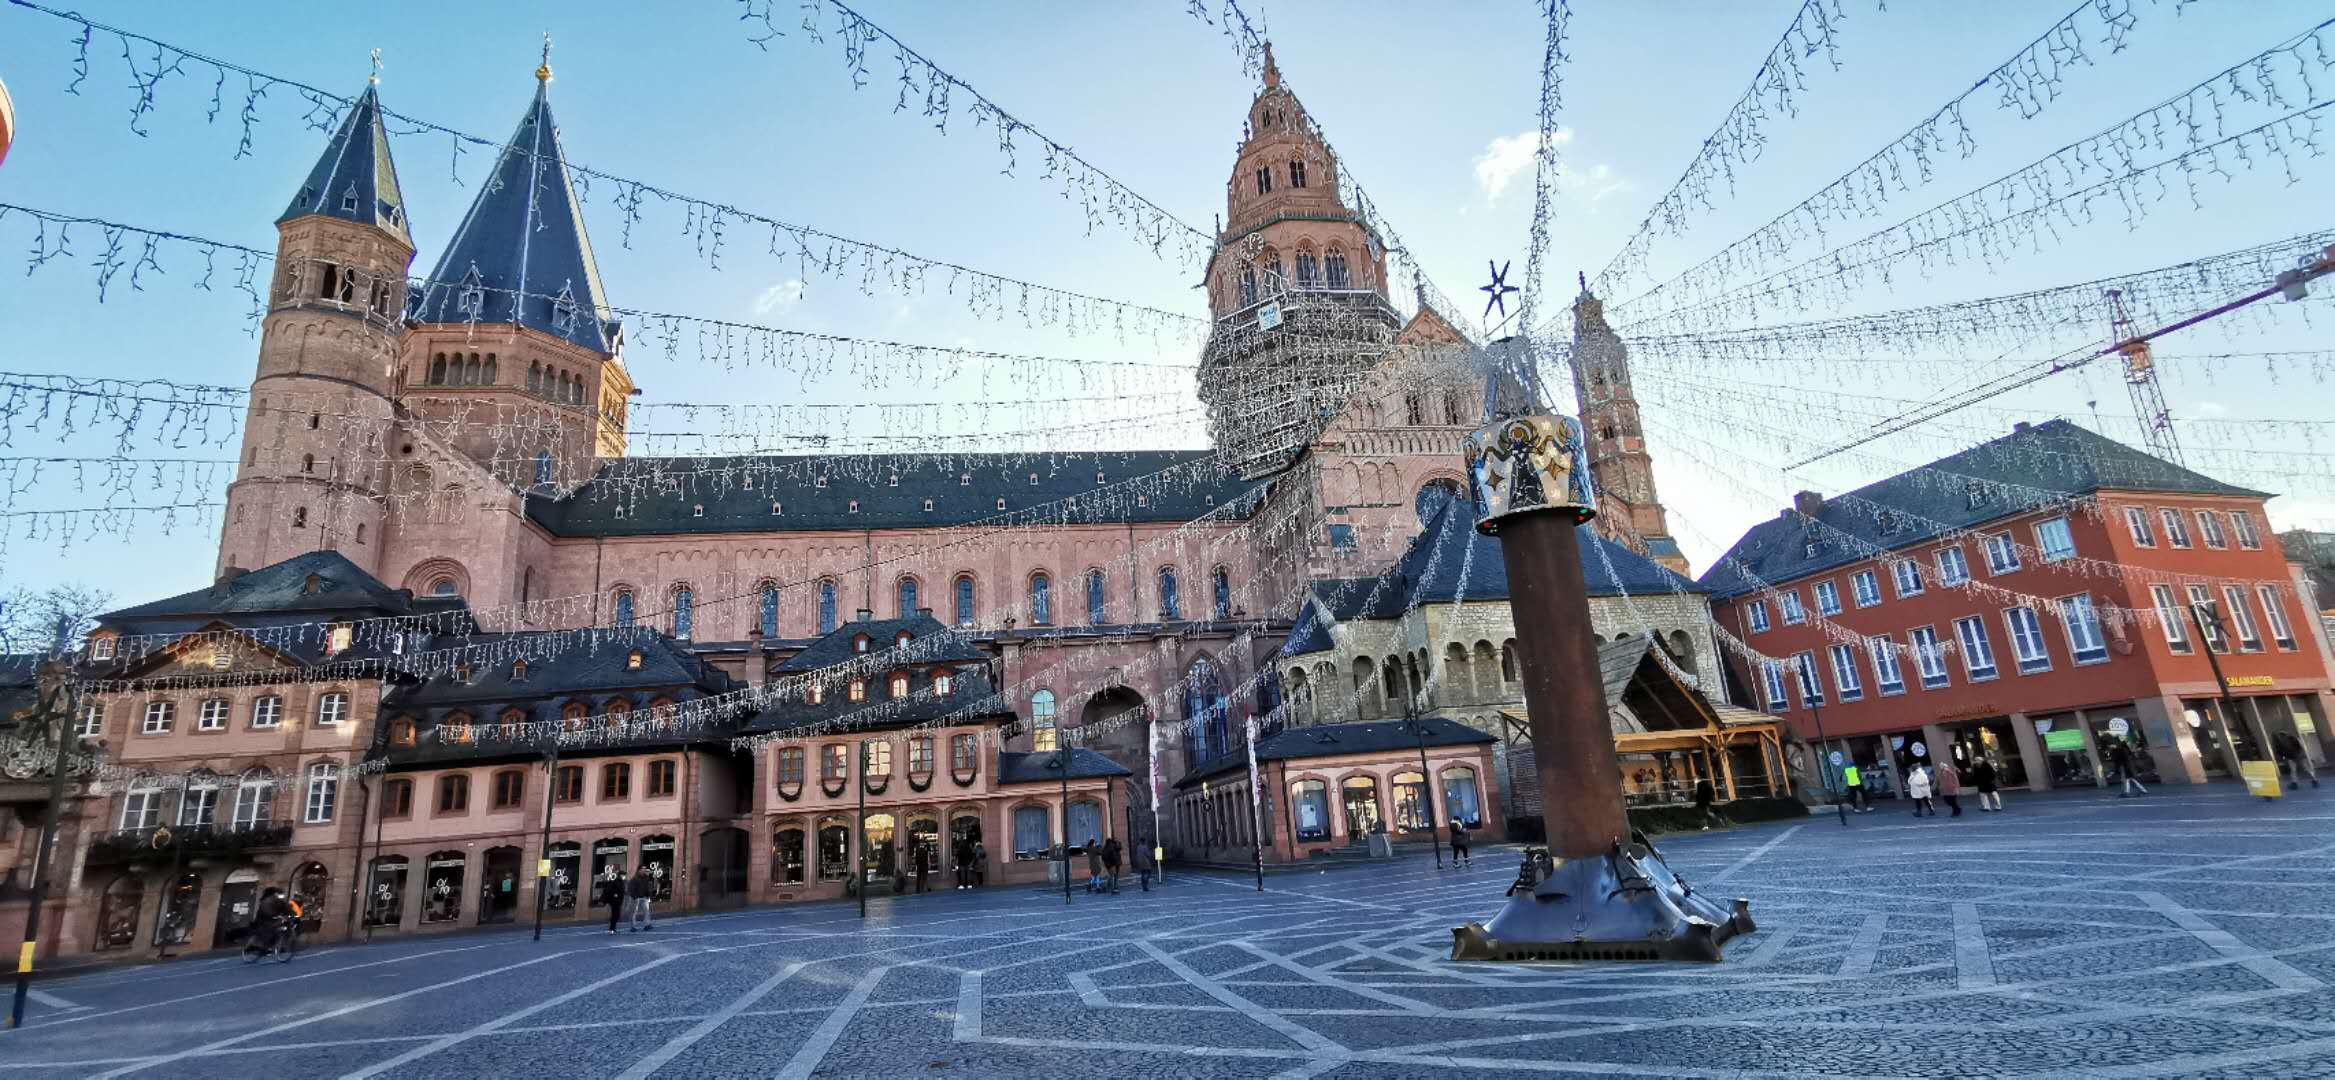 Mainz-Domplatz